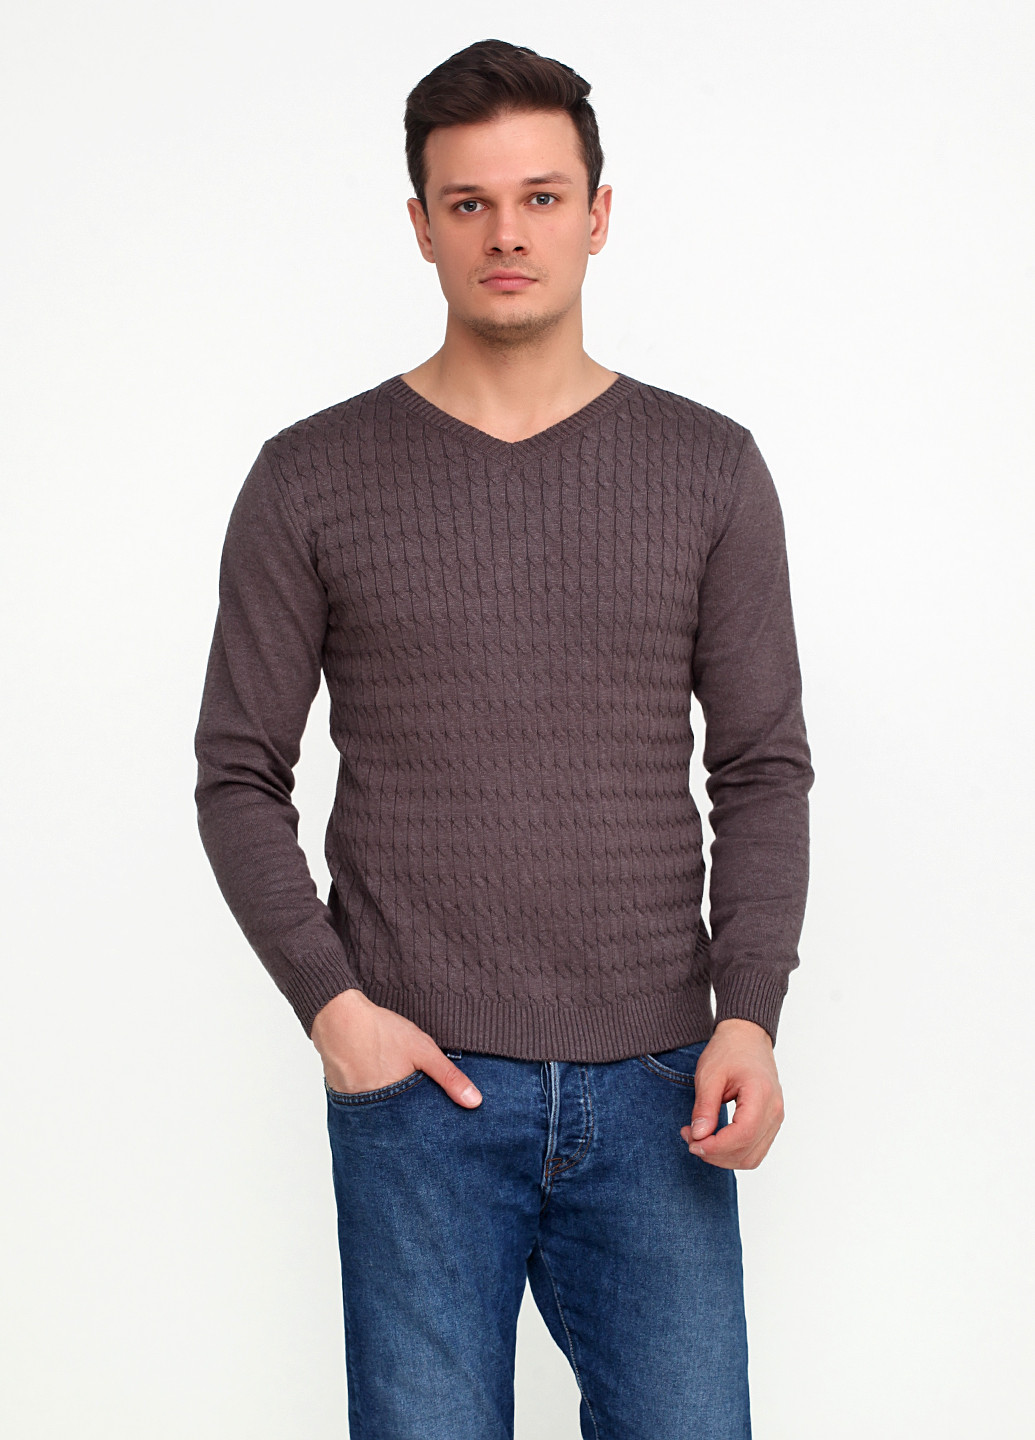 Светло-коричневый демисезонный пуловер пуловер Zaldiz